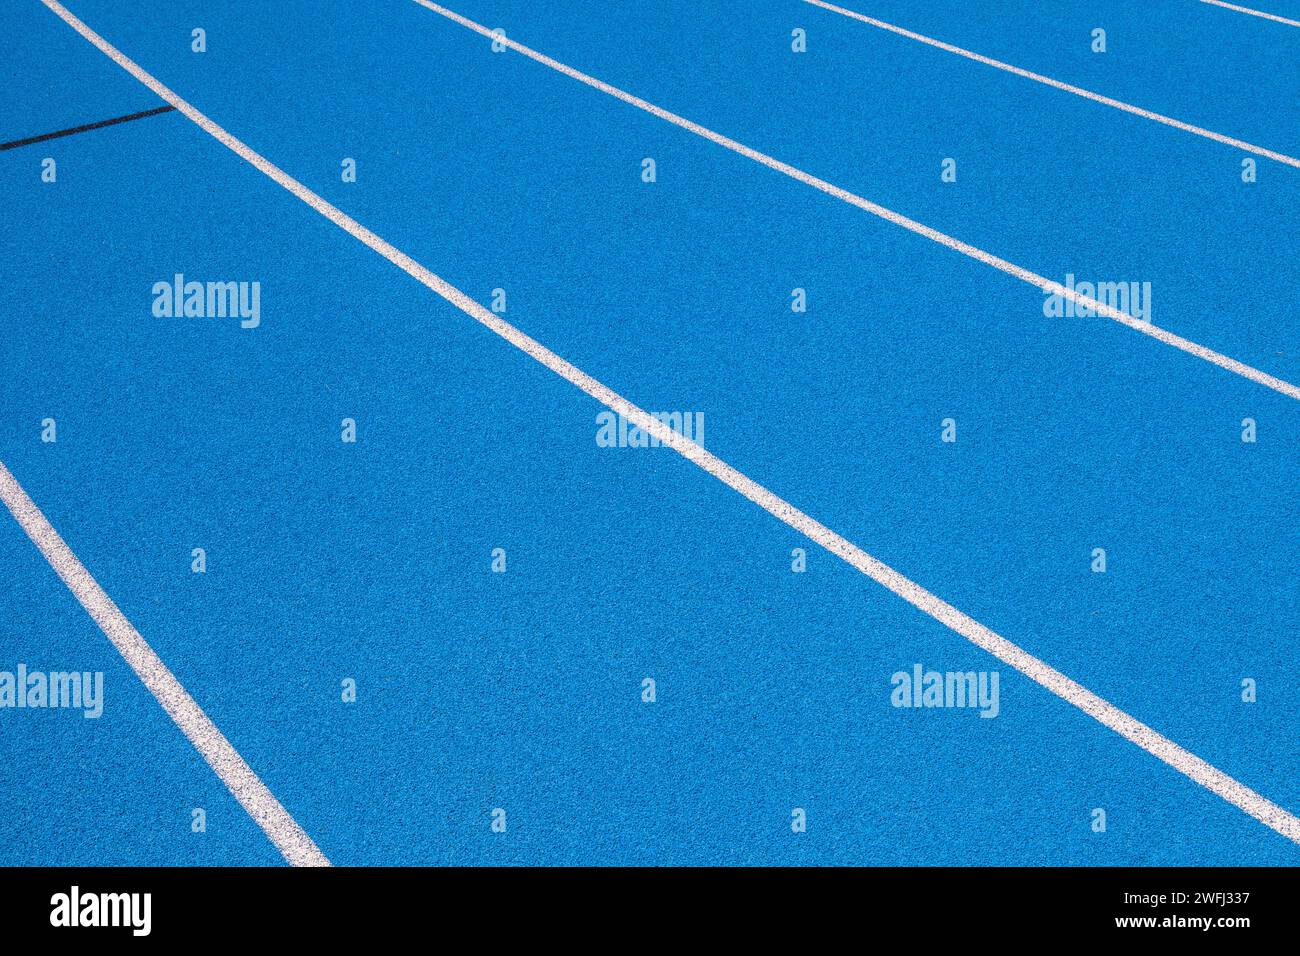 Les pistes olympiques bleues avec des bandes blanches, un fond vide adapté à l'espace de copie, représentent le concept de sport physique et de course à pied, symbole Banque D'Images